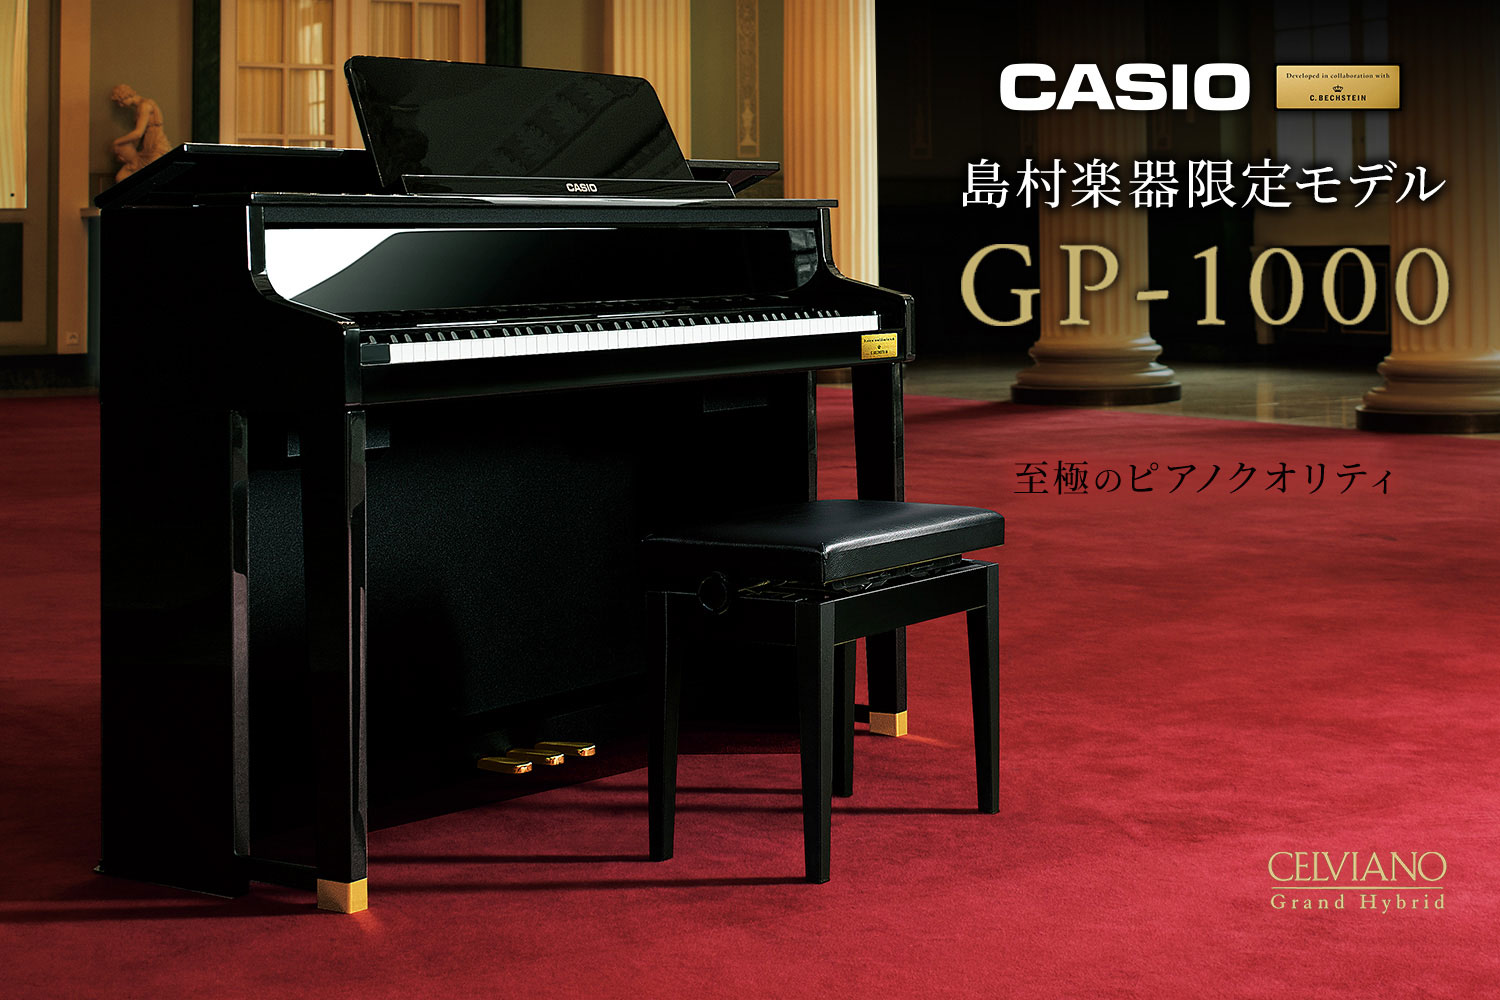 入荷しました！CASIO×C.ベヒシュタイン コラボレーション電子ピアノに島村楽器限定モデル「GP-1000」が新登場！